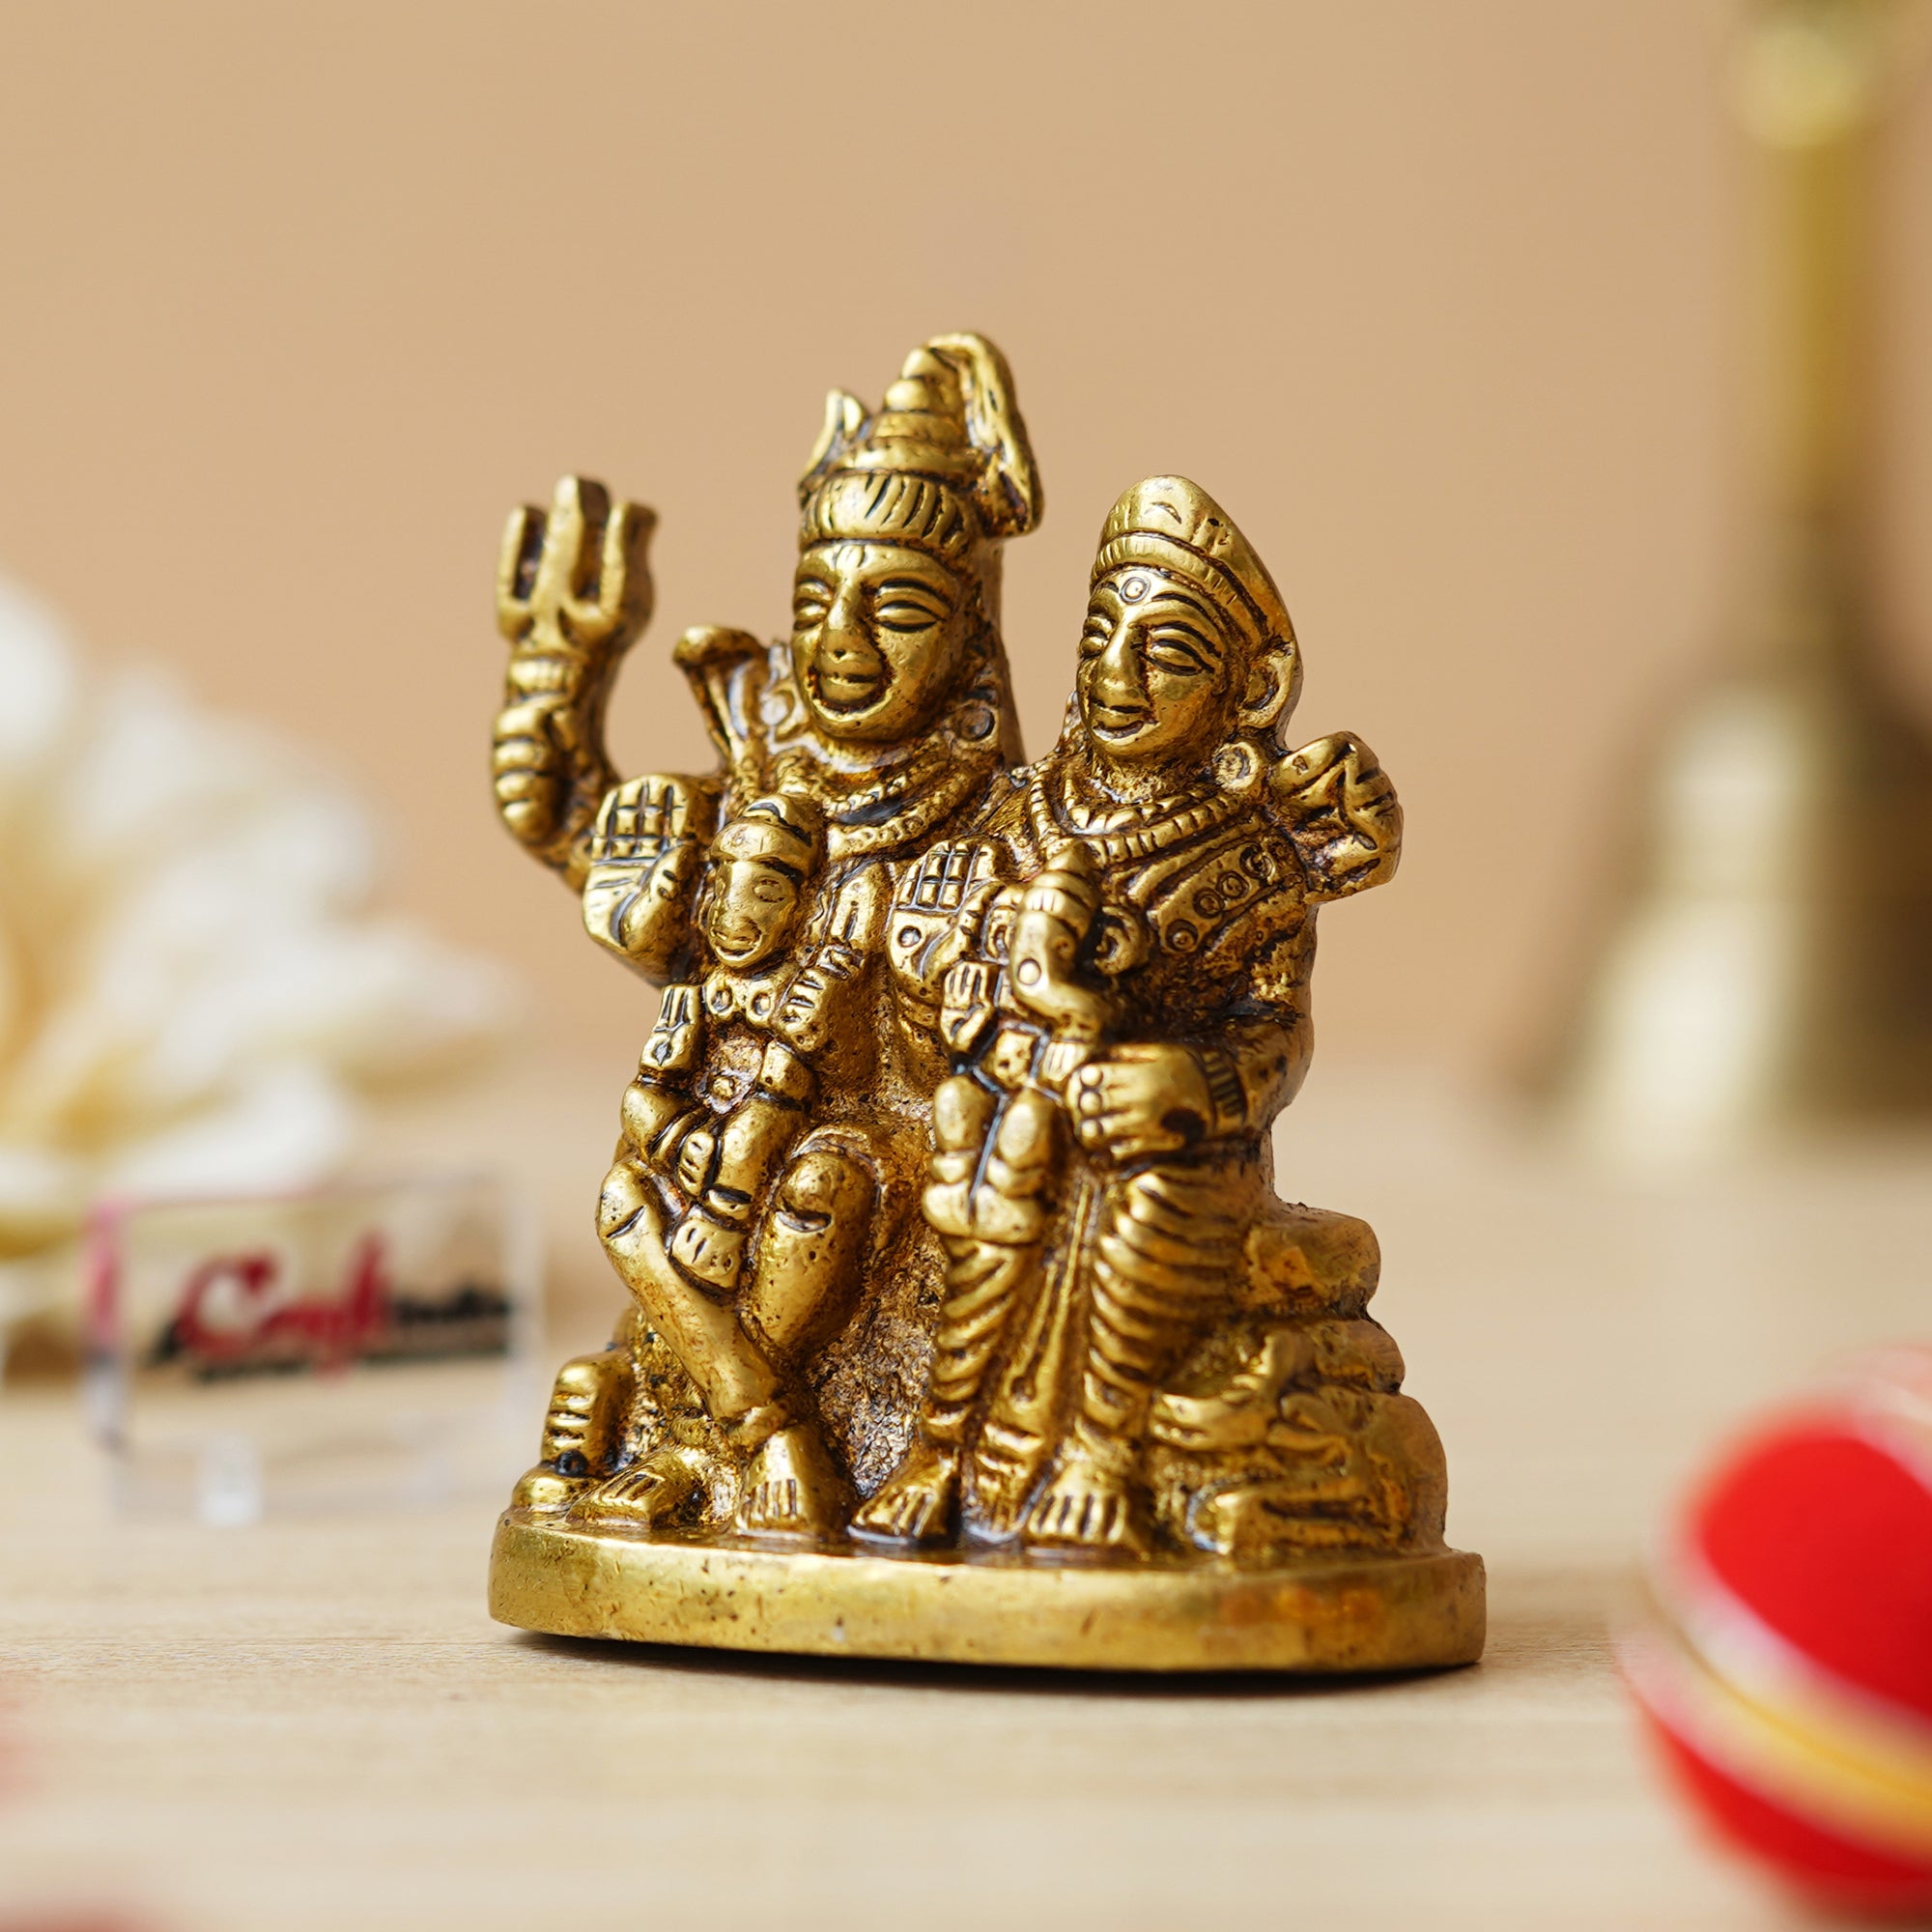 Golden Brass Shiv Parivar Murti Idol - Lord Shiva, Parvati, Ganesha, Kartikeya Statue for Home Temple, Car Dashboard 5